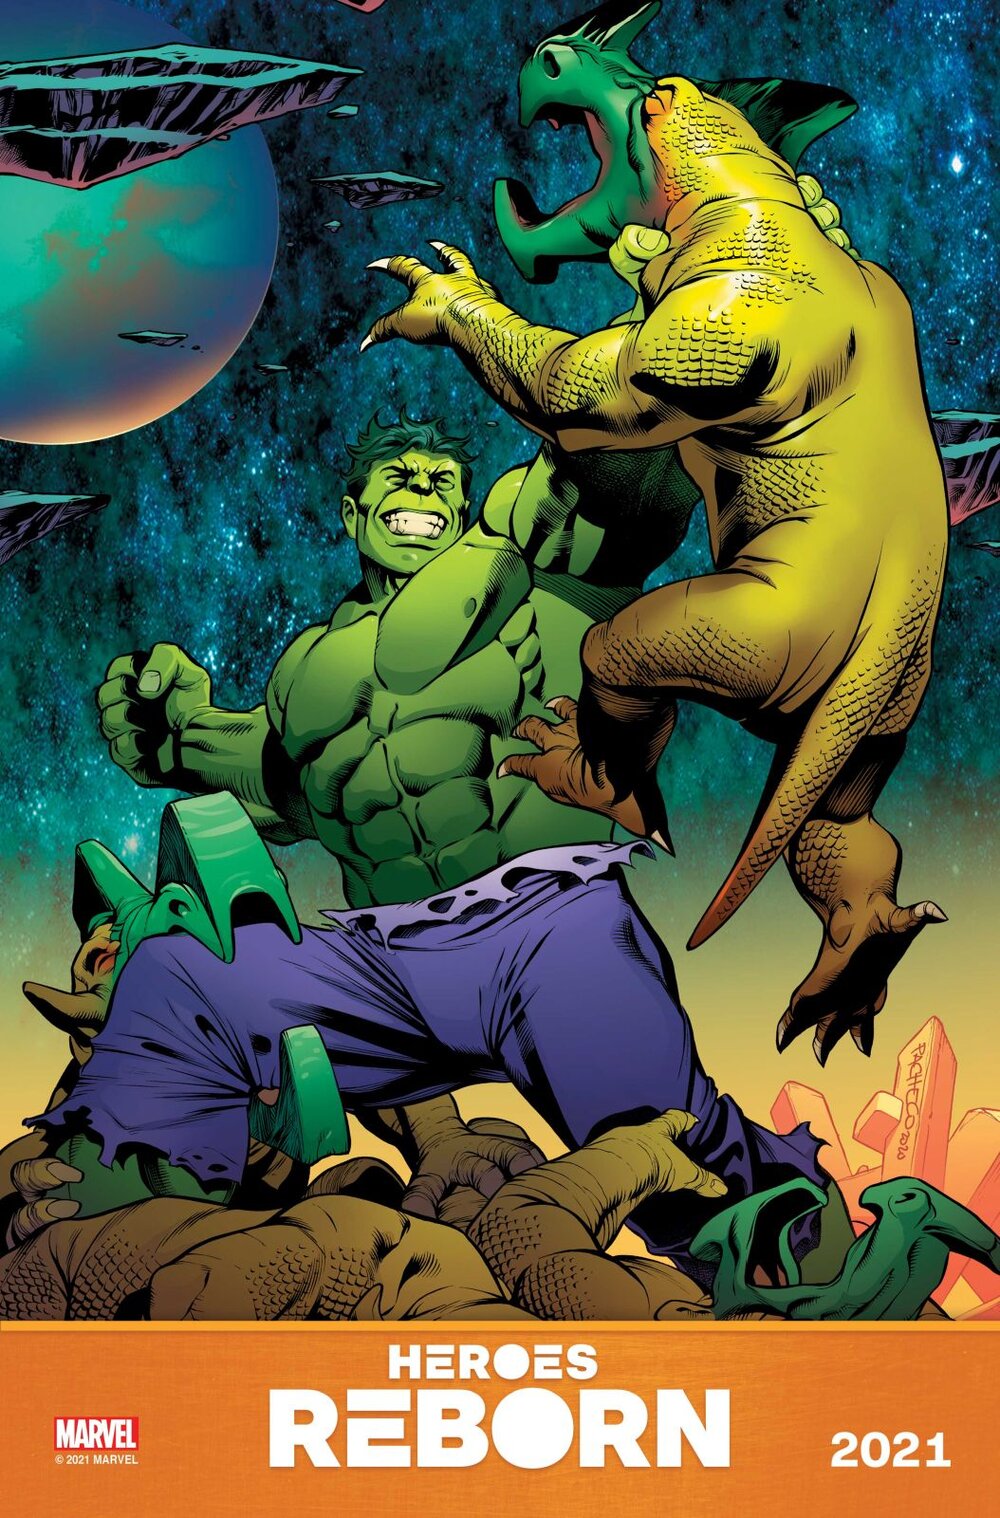 HeroesReborn-Hulk.jpg